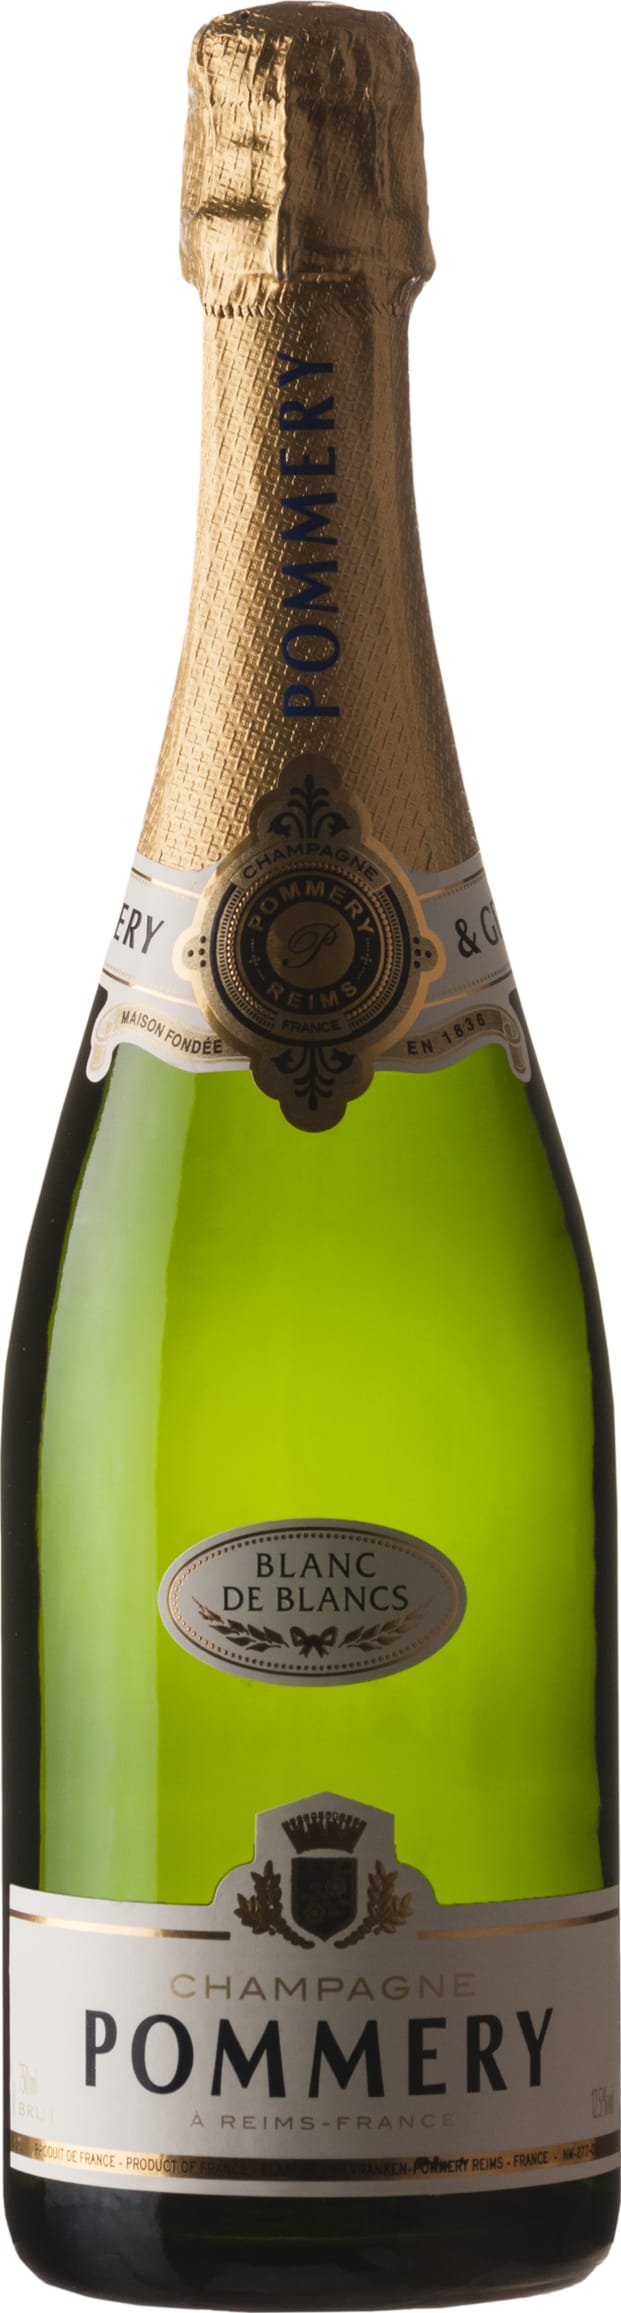 Champagne Pommery Apanage Blanc de Blancs 75cl NV - Buy Champagne Pommery Wines from GREAT WINES DIRECT wine shop